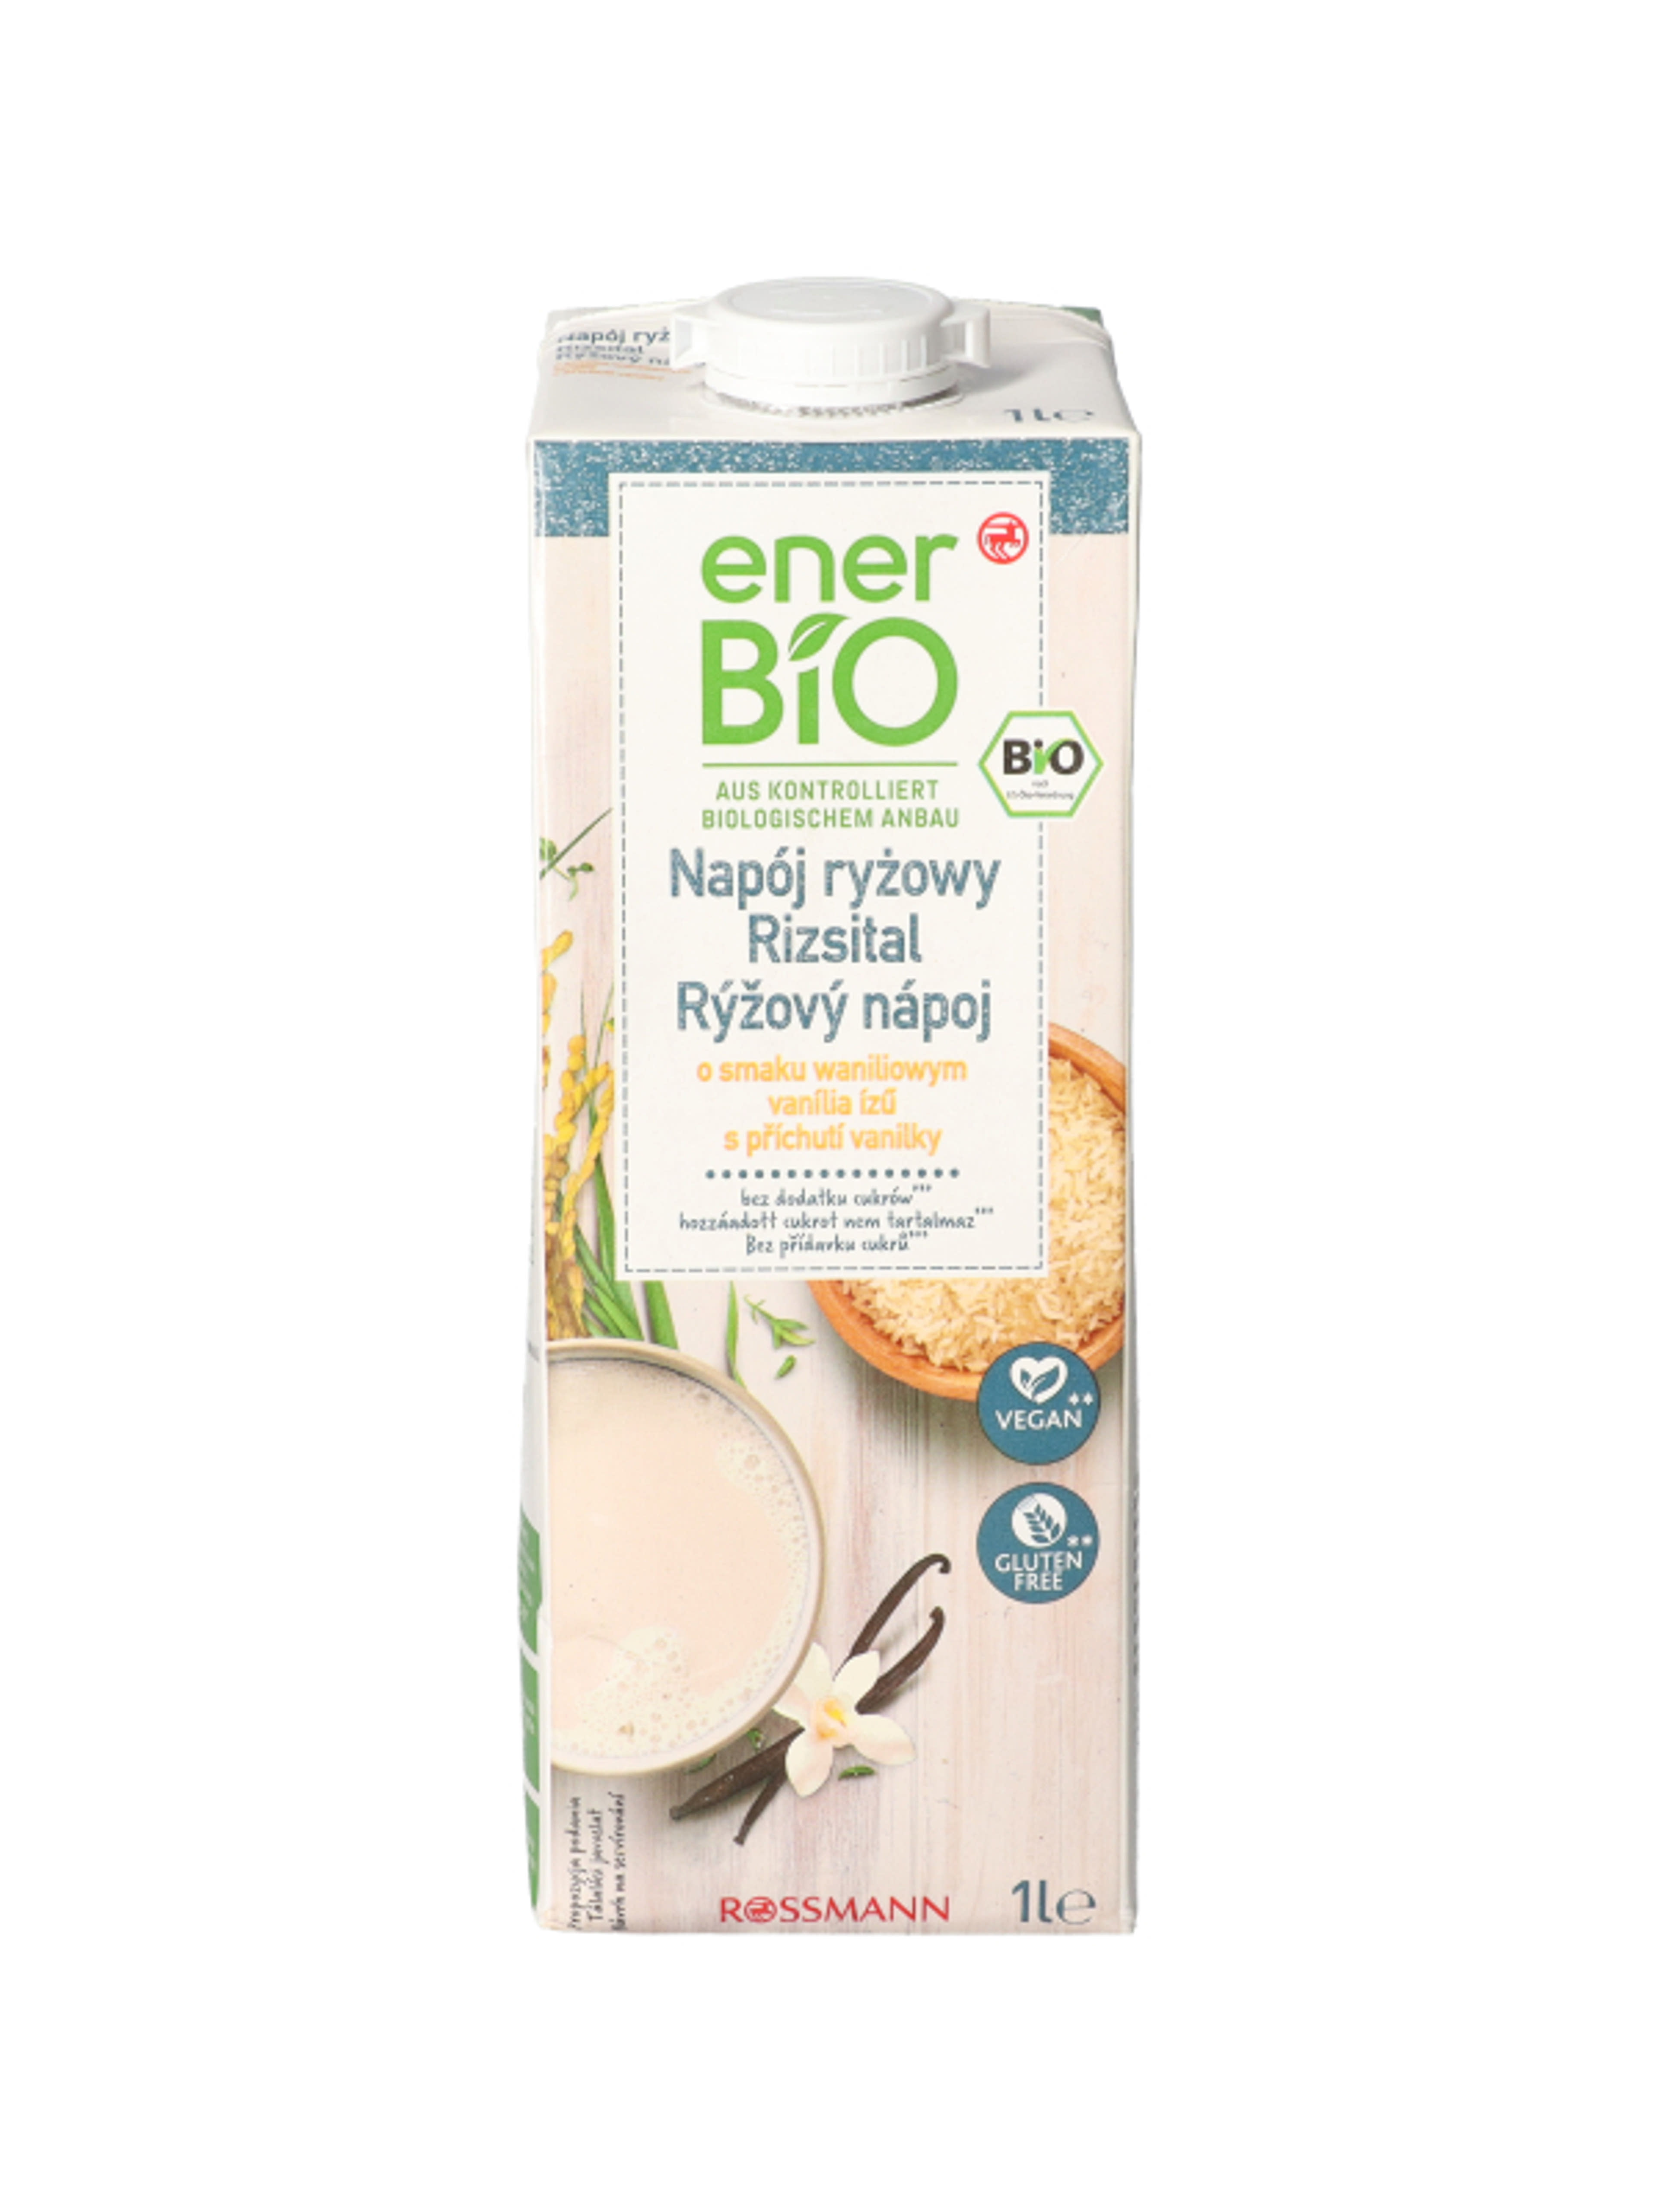 enerBio vaníliás rizsital - 1 l
hozzáadott cukrot nem tartalmaz
vegán és gluténmentes-1